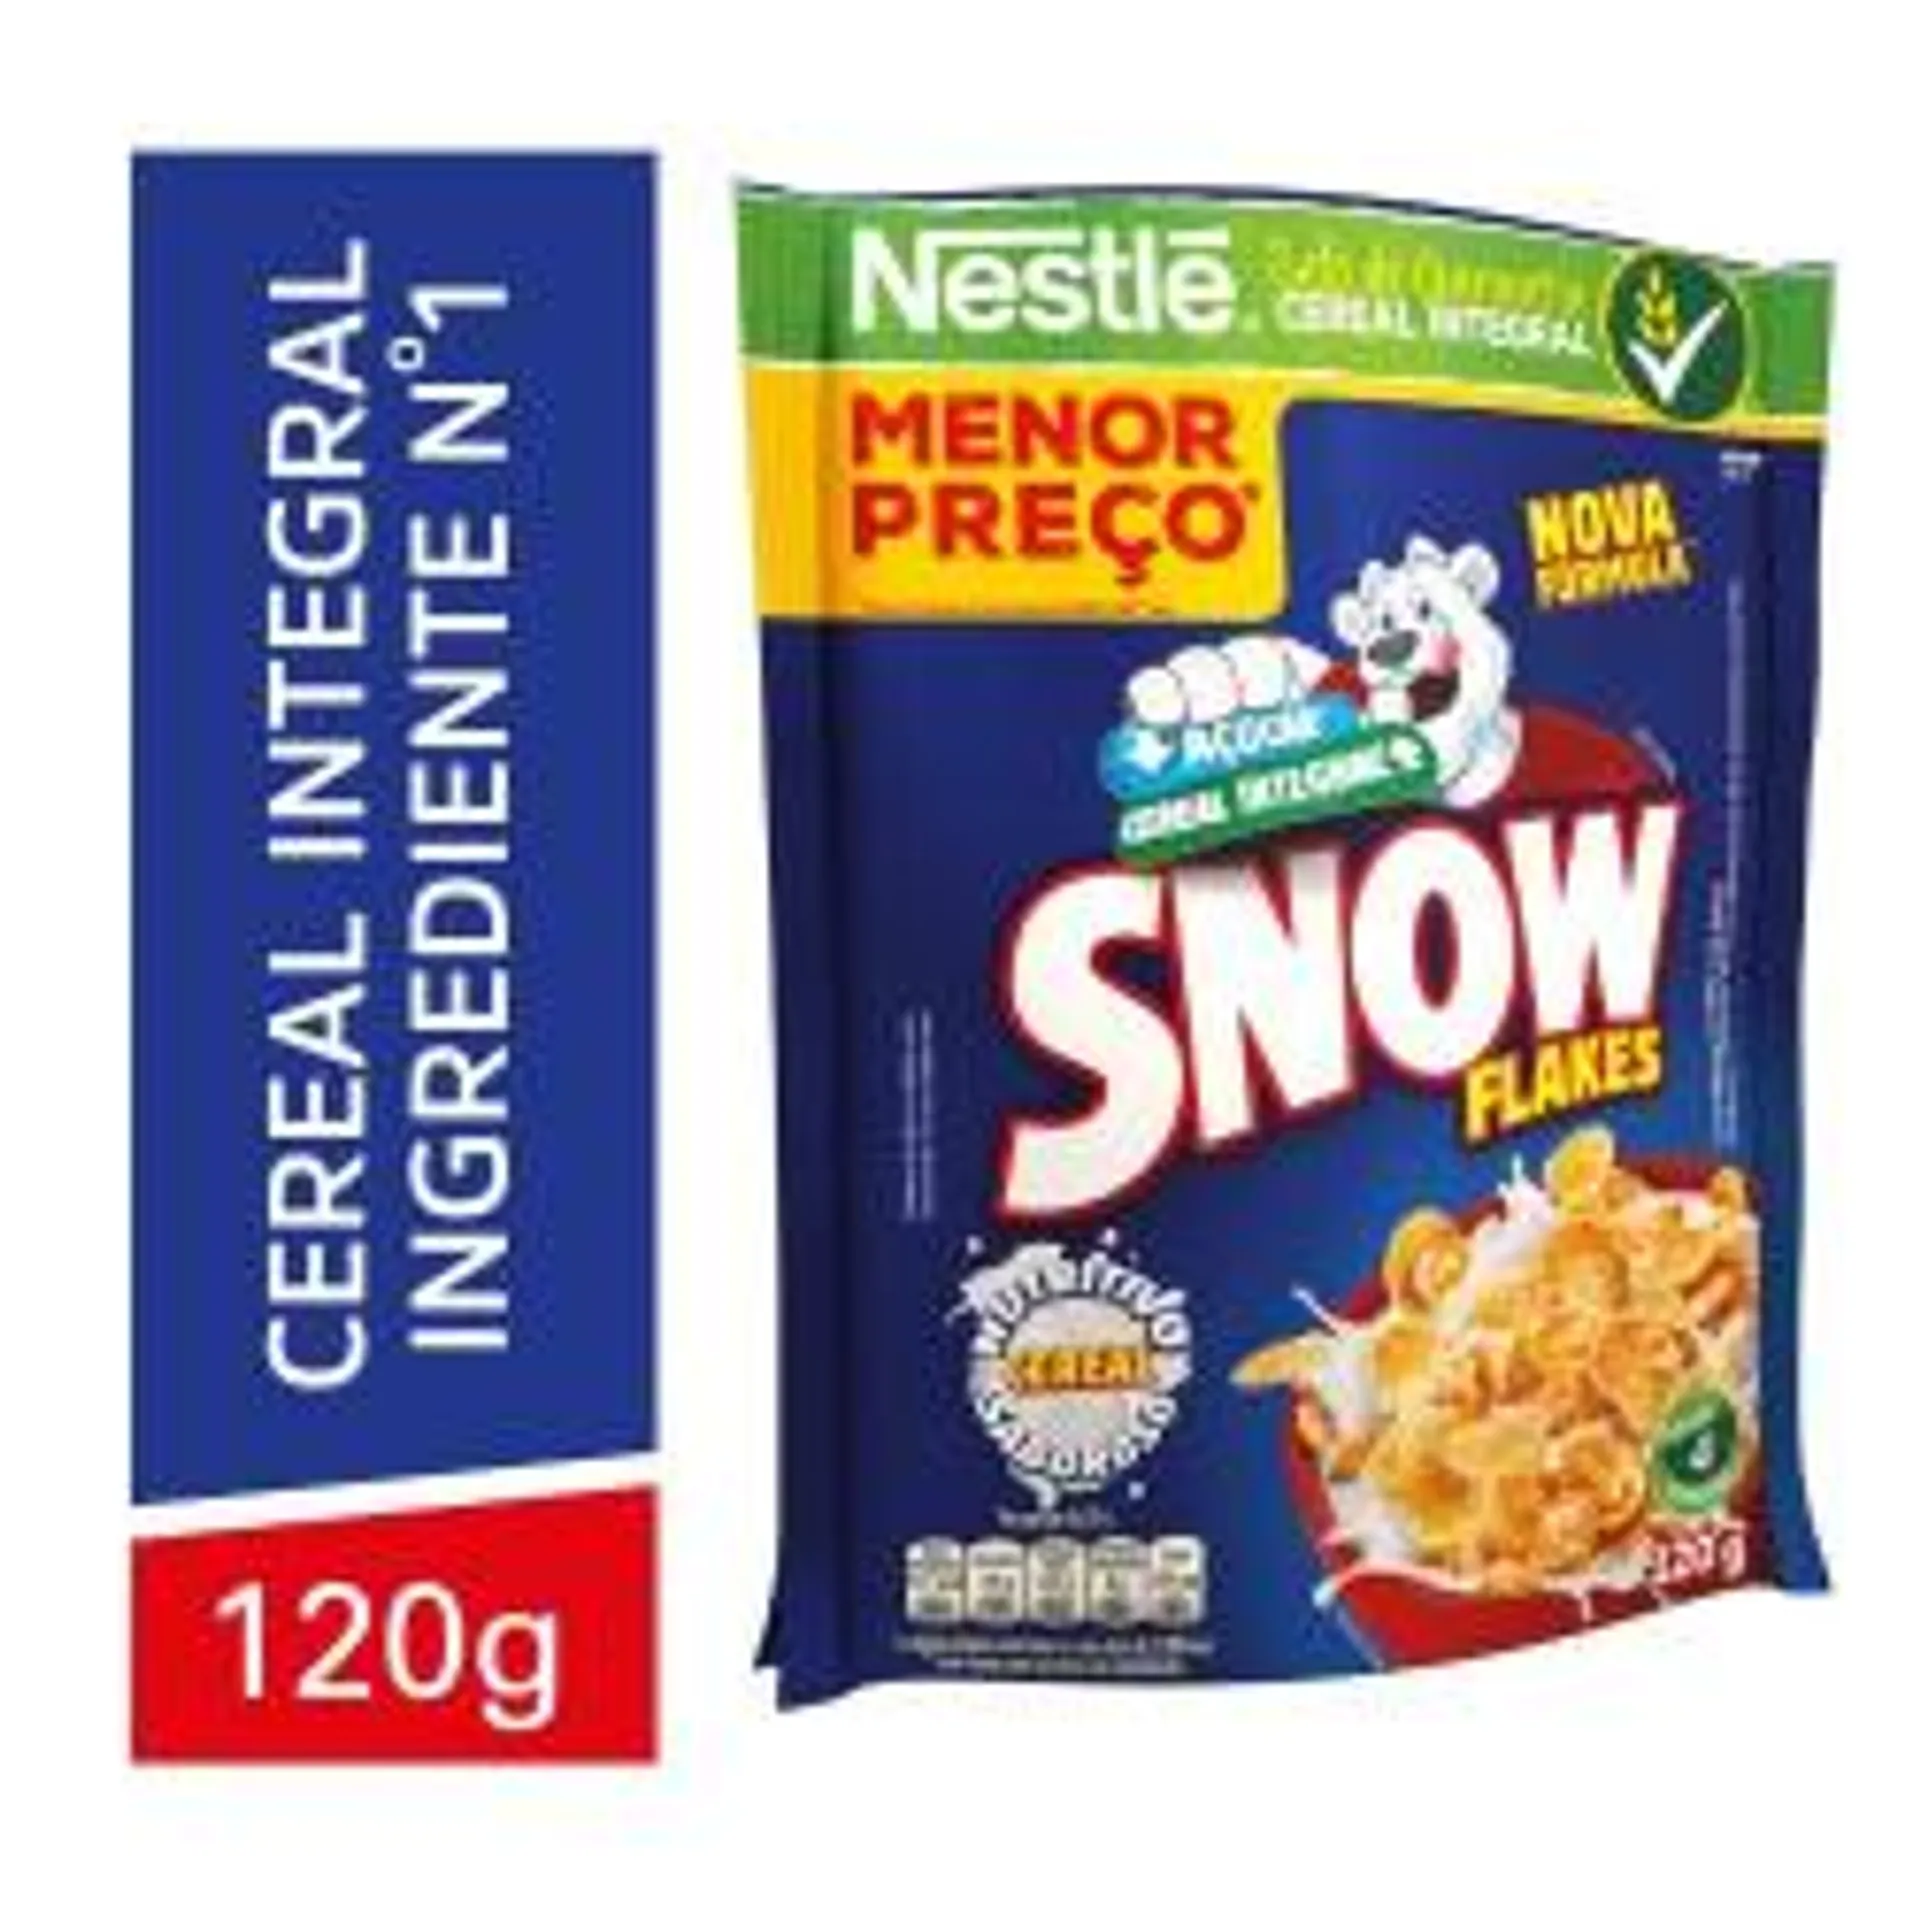 Cereal Matinal Nestlé Snow Flakes 120g